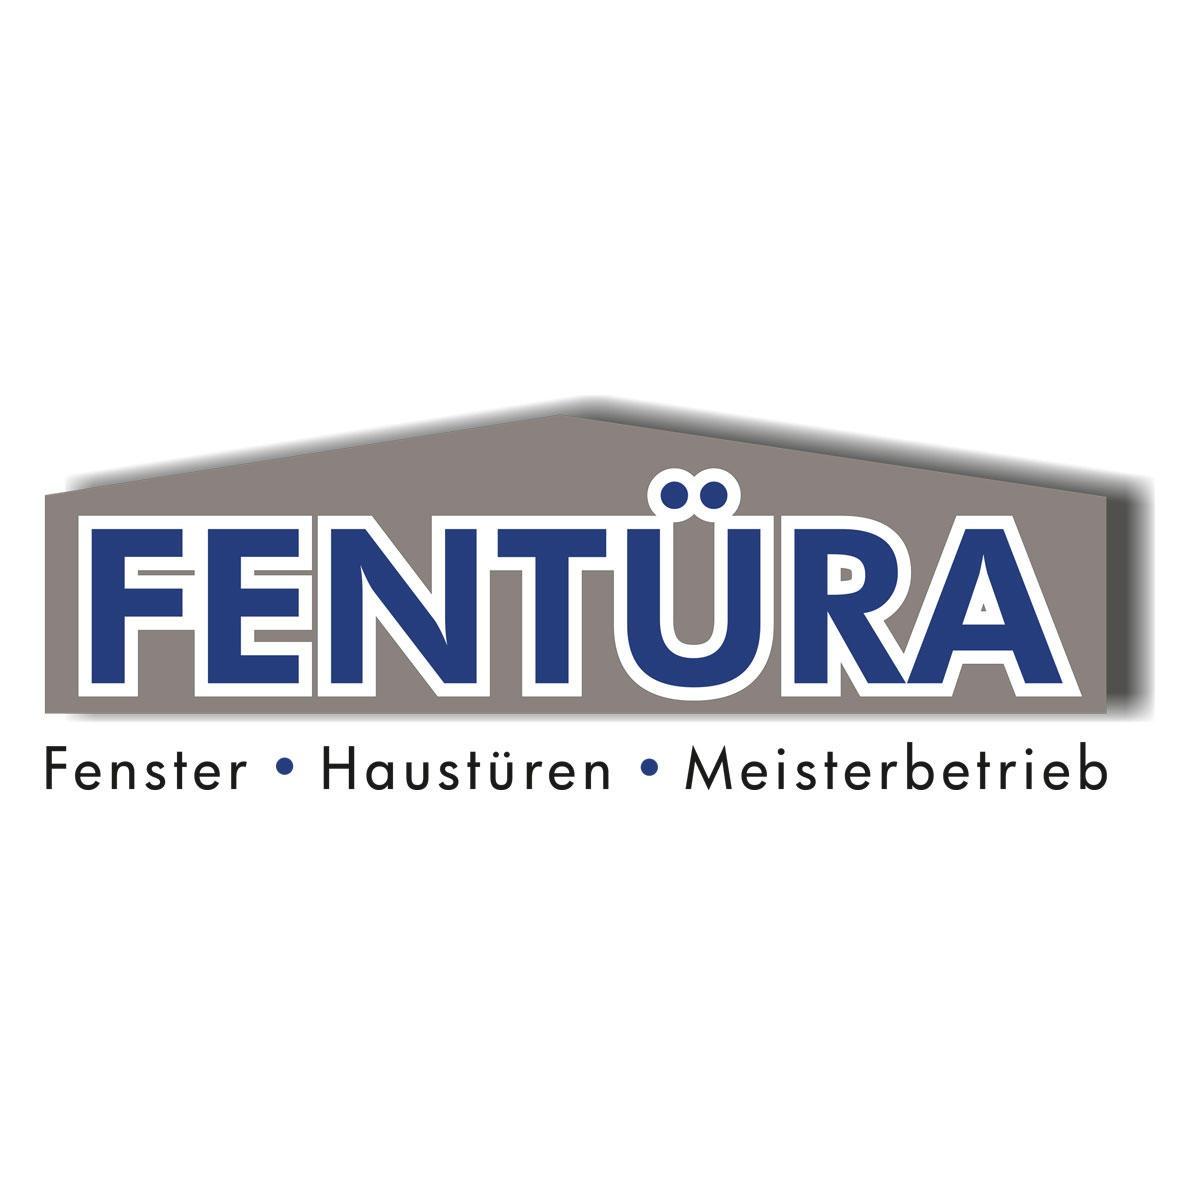 Bild zu Fentüra GmbH & Co. KG in Schwerte